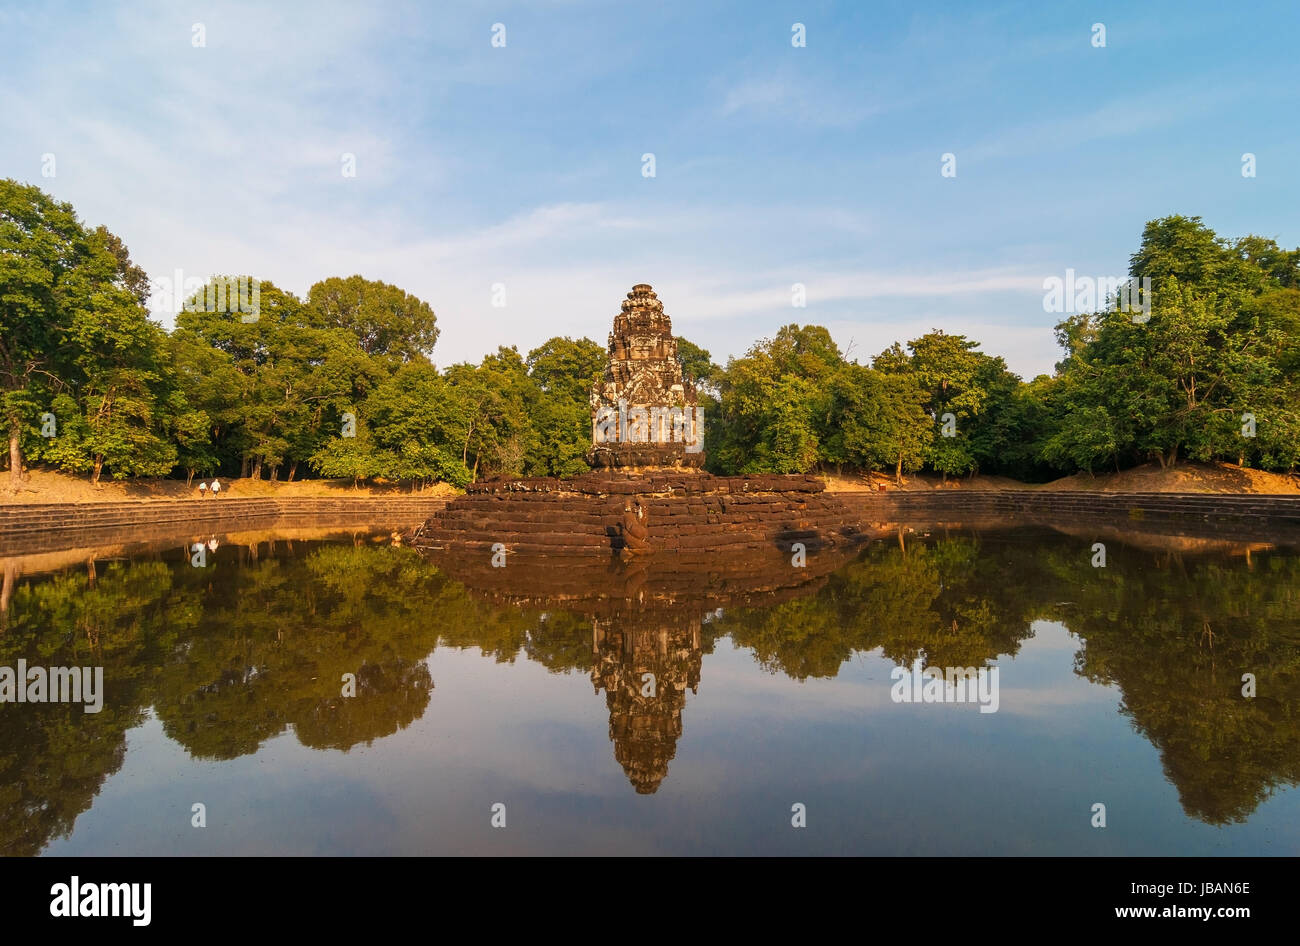 Un stile khmer prang torre nel sito inondate di Prasat Neak Pean all'interno del tempio di Angkor complesso. È stato un cerimoniale complesso acqua e ospedale. Foto Stock